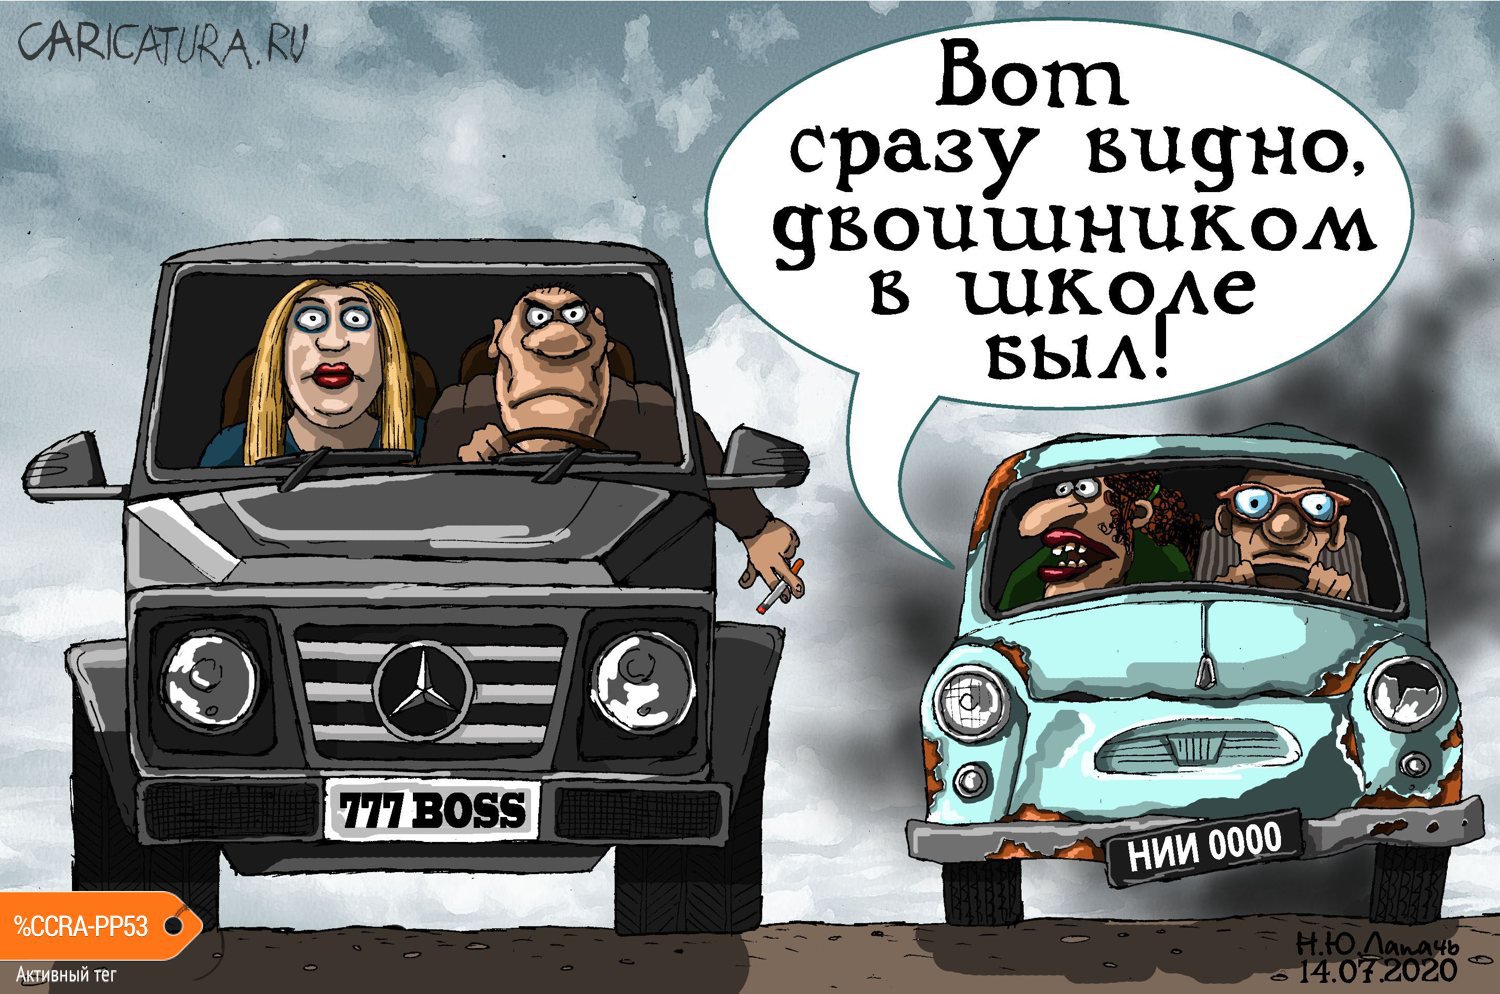 Карикатура "Двоечник", Теплый Телогрей